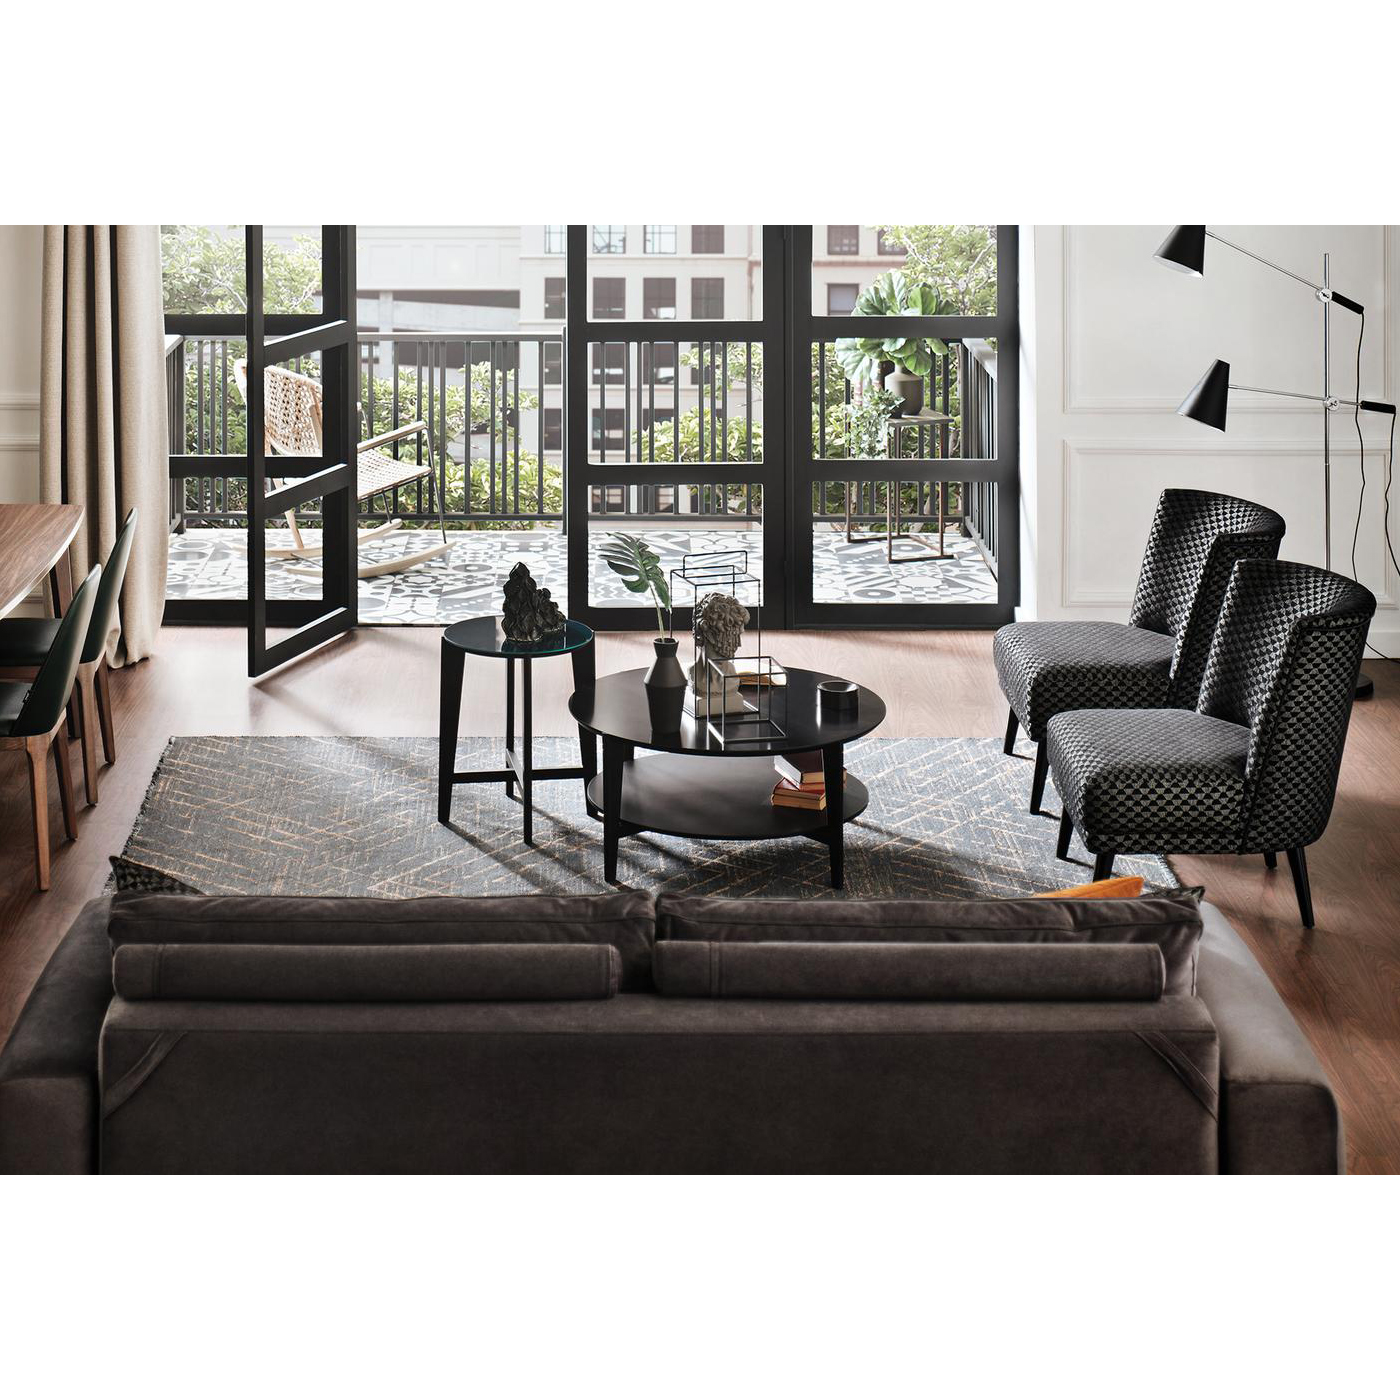 Кресло Enza Home Carino, размер 72х84х84 см